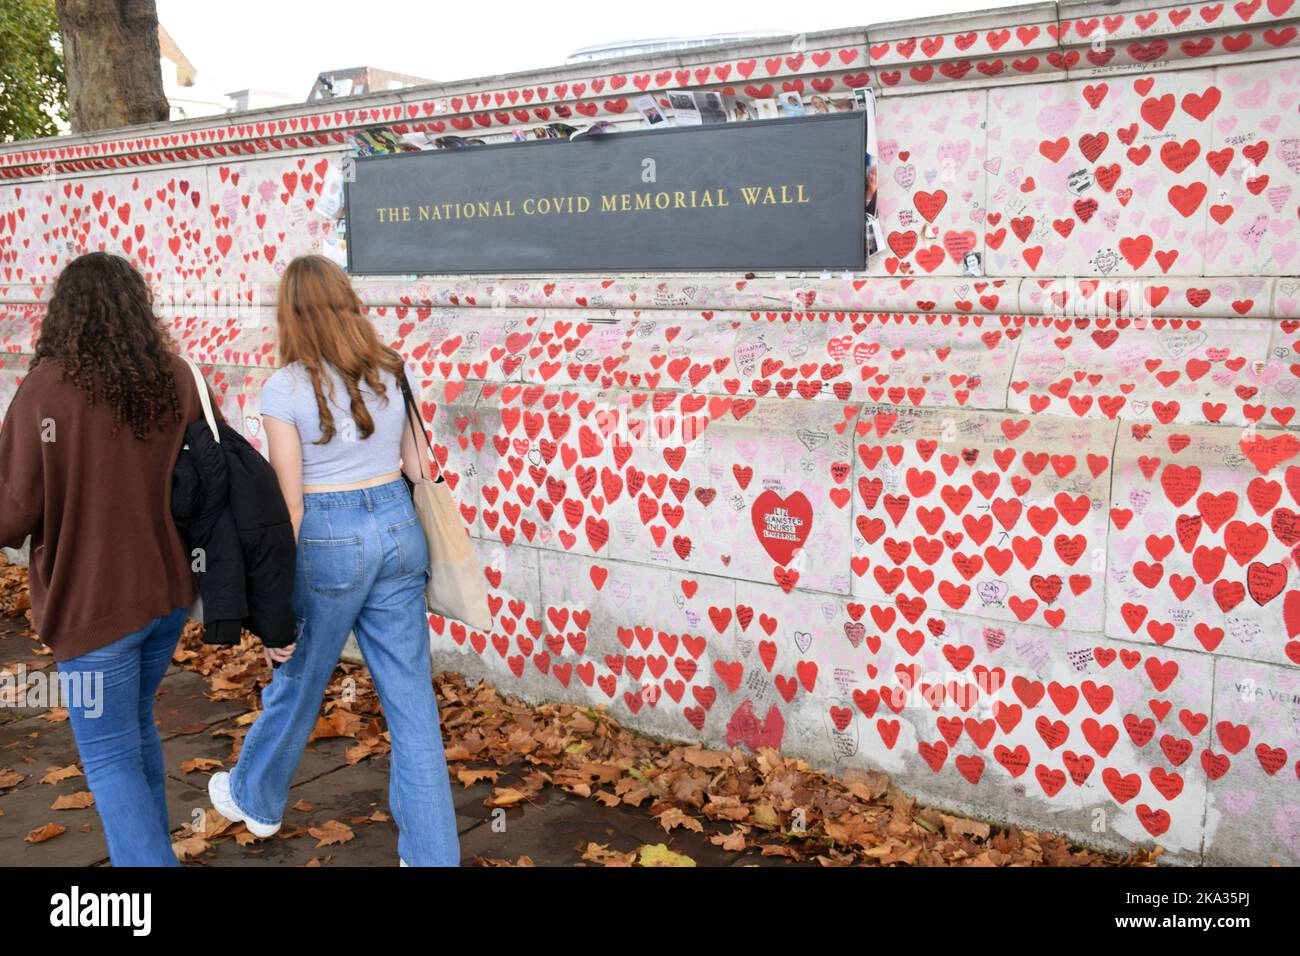 Le mur commémoratif national du Covid commémorera tous ceux qui ont perdu la vie dans l'épidémie du coronavirus, Londres, octobre 2022 Banque D'Images